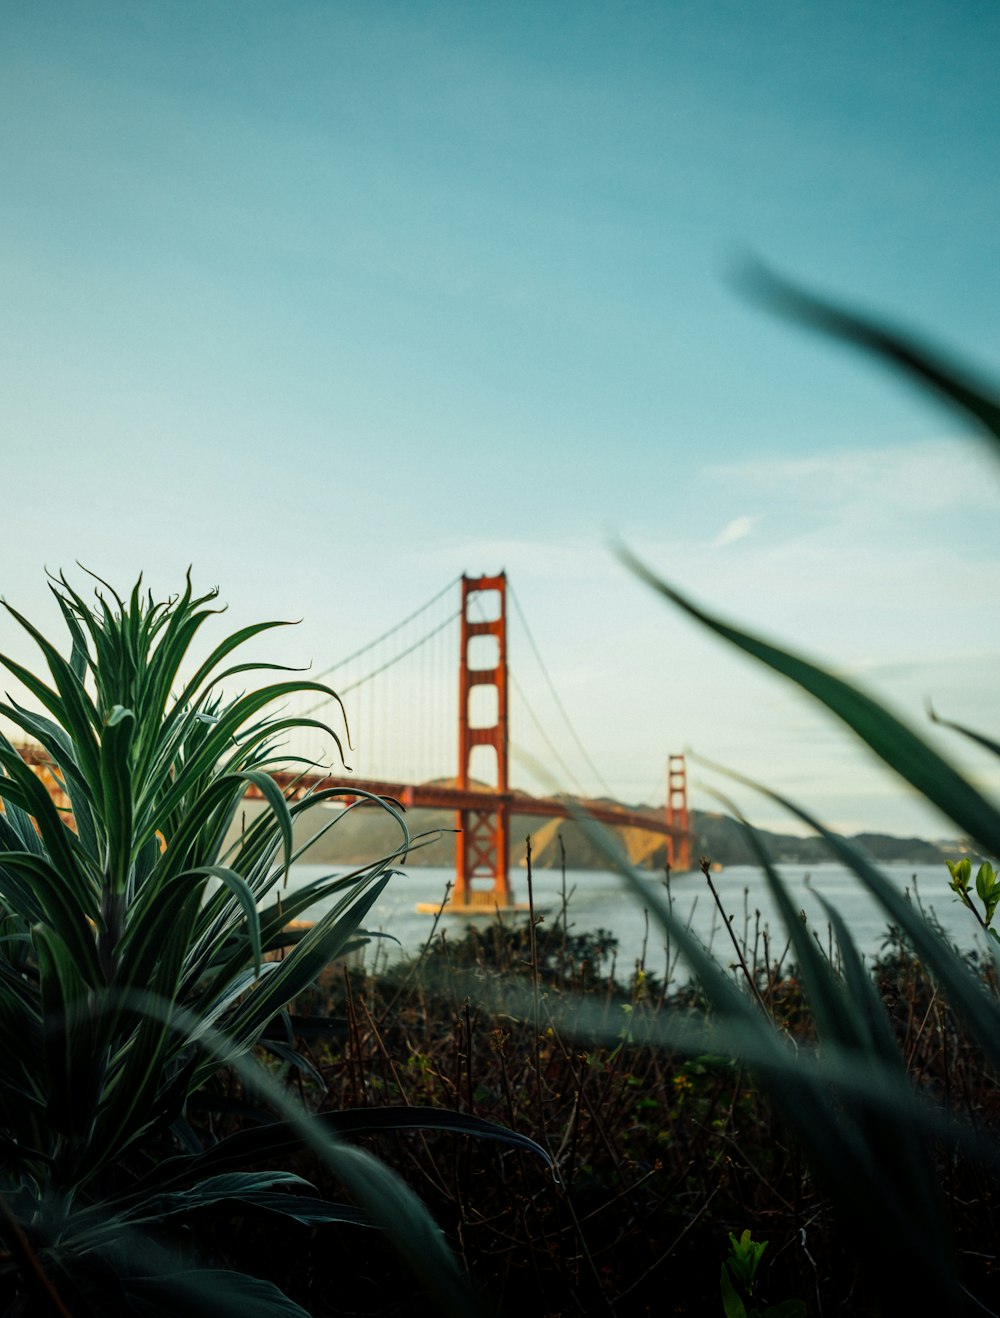 금문교(Golden Gate Bridge)